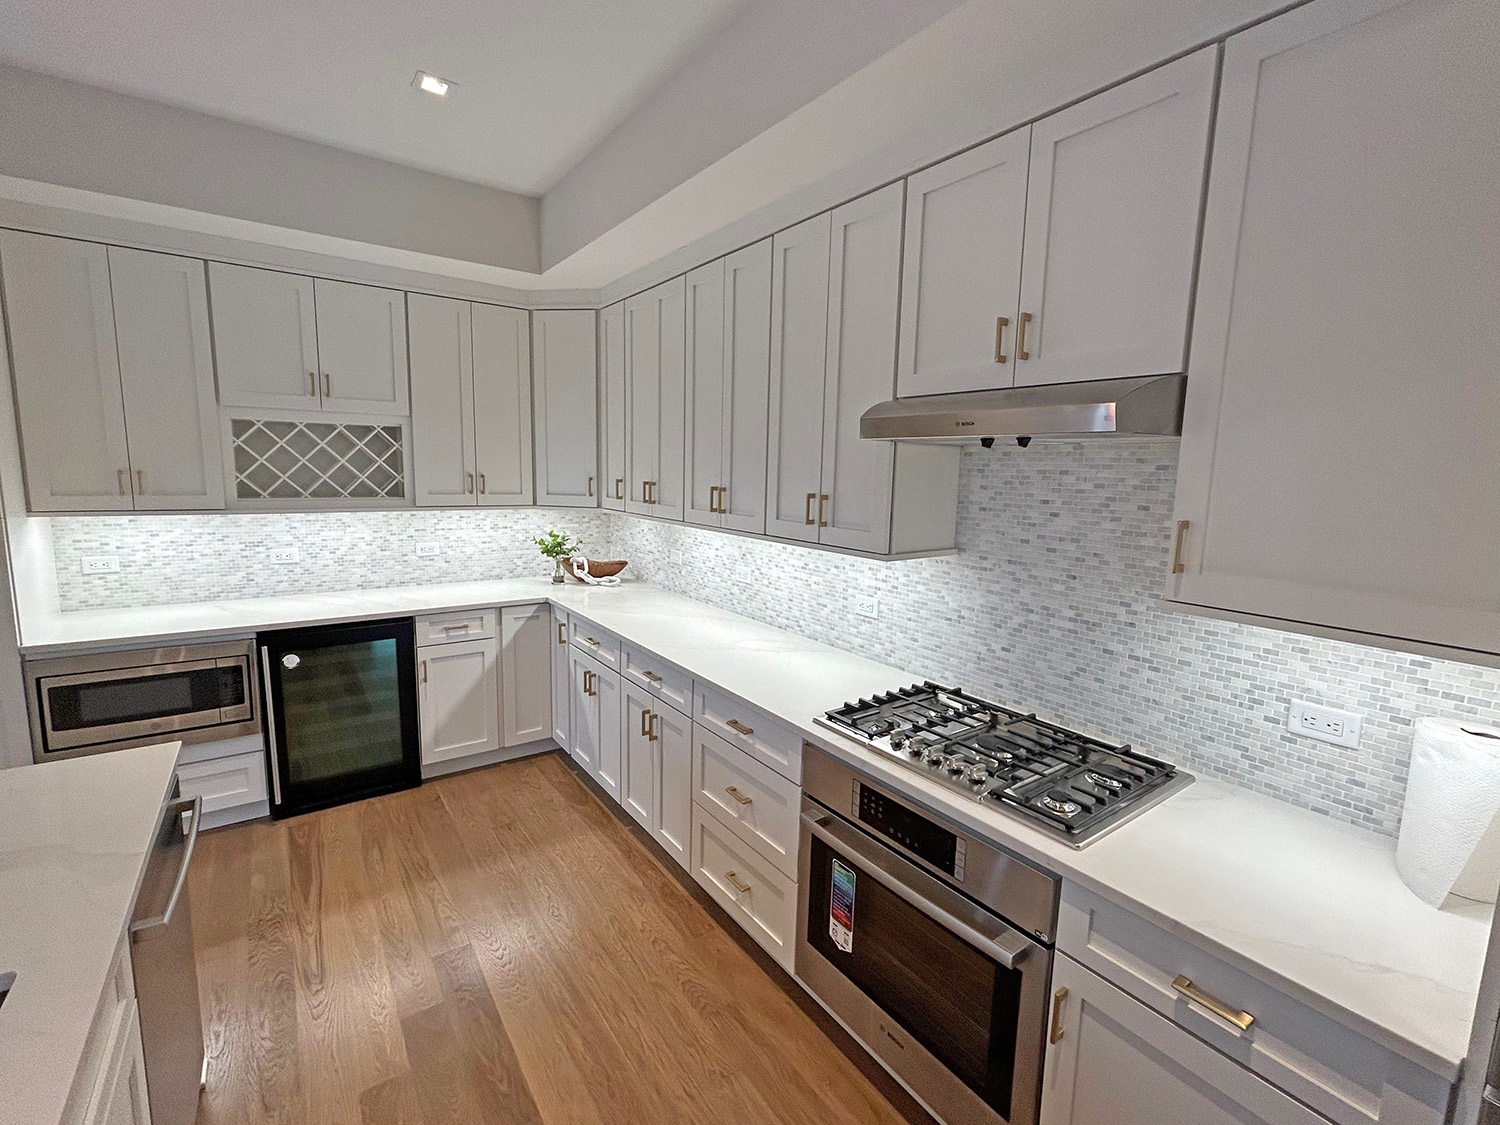 Luxury-apartment-kitchen-design-and-installation